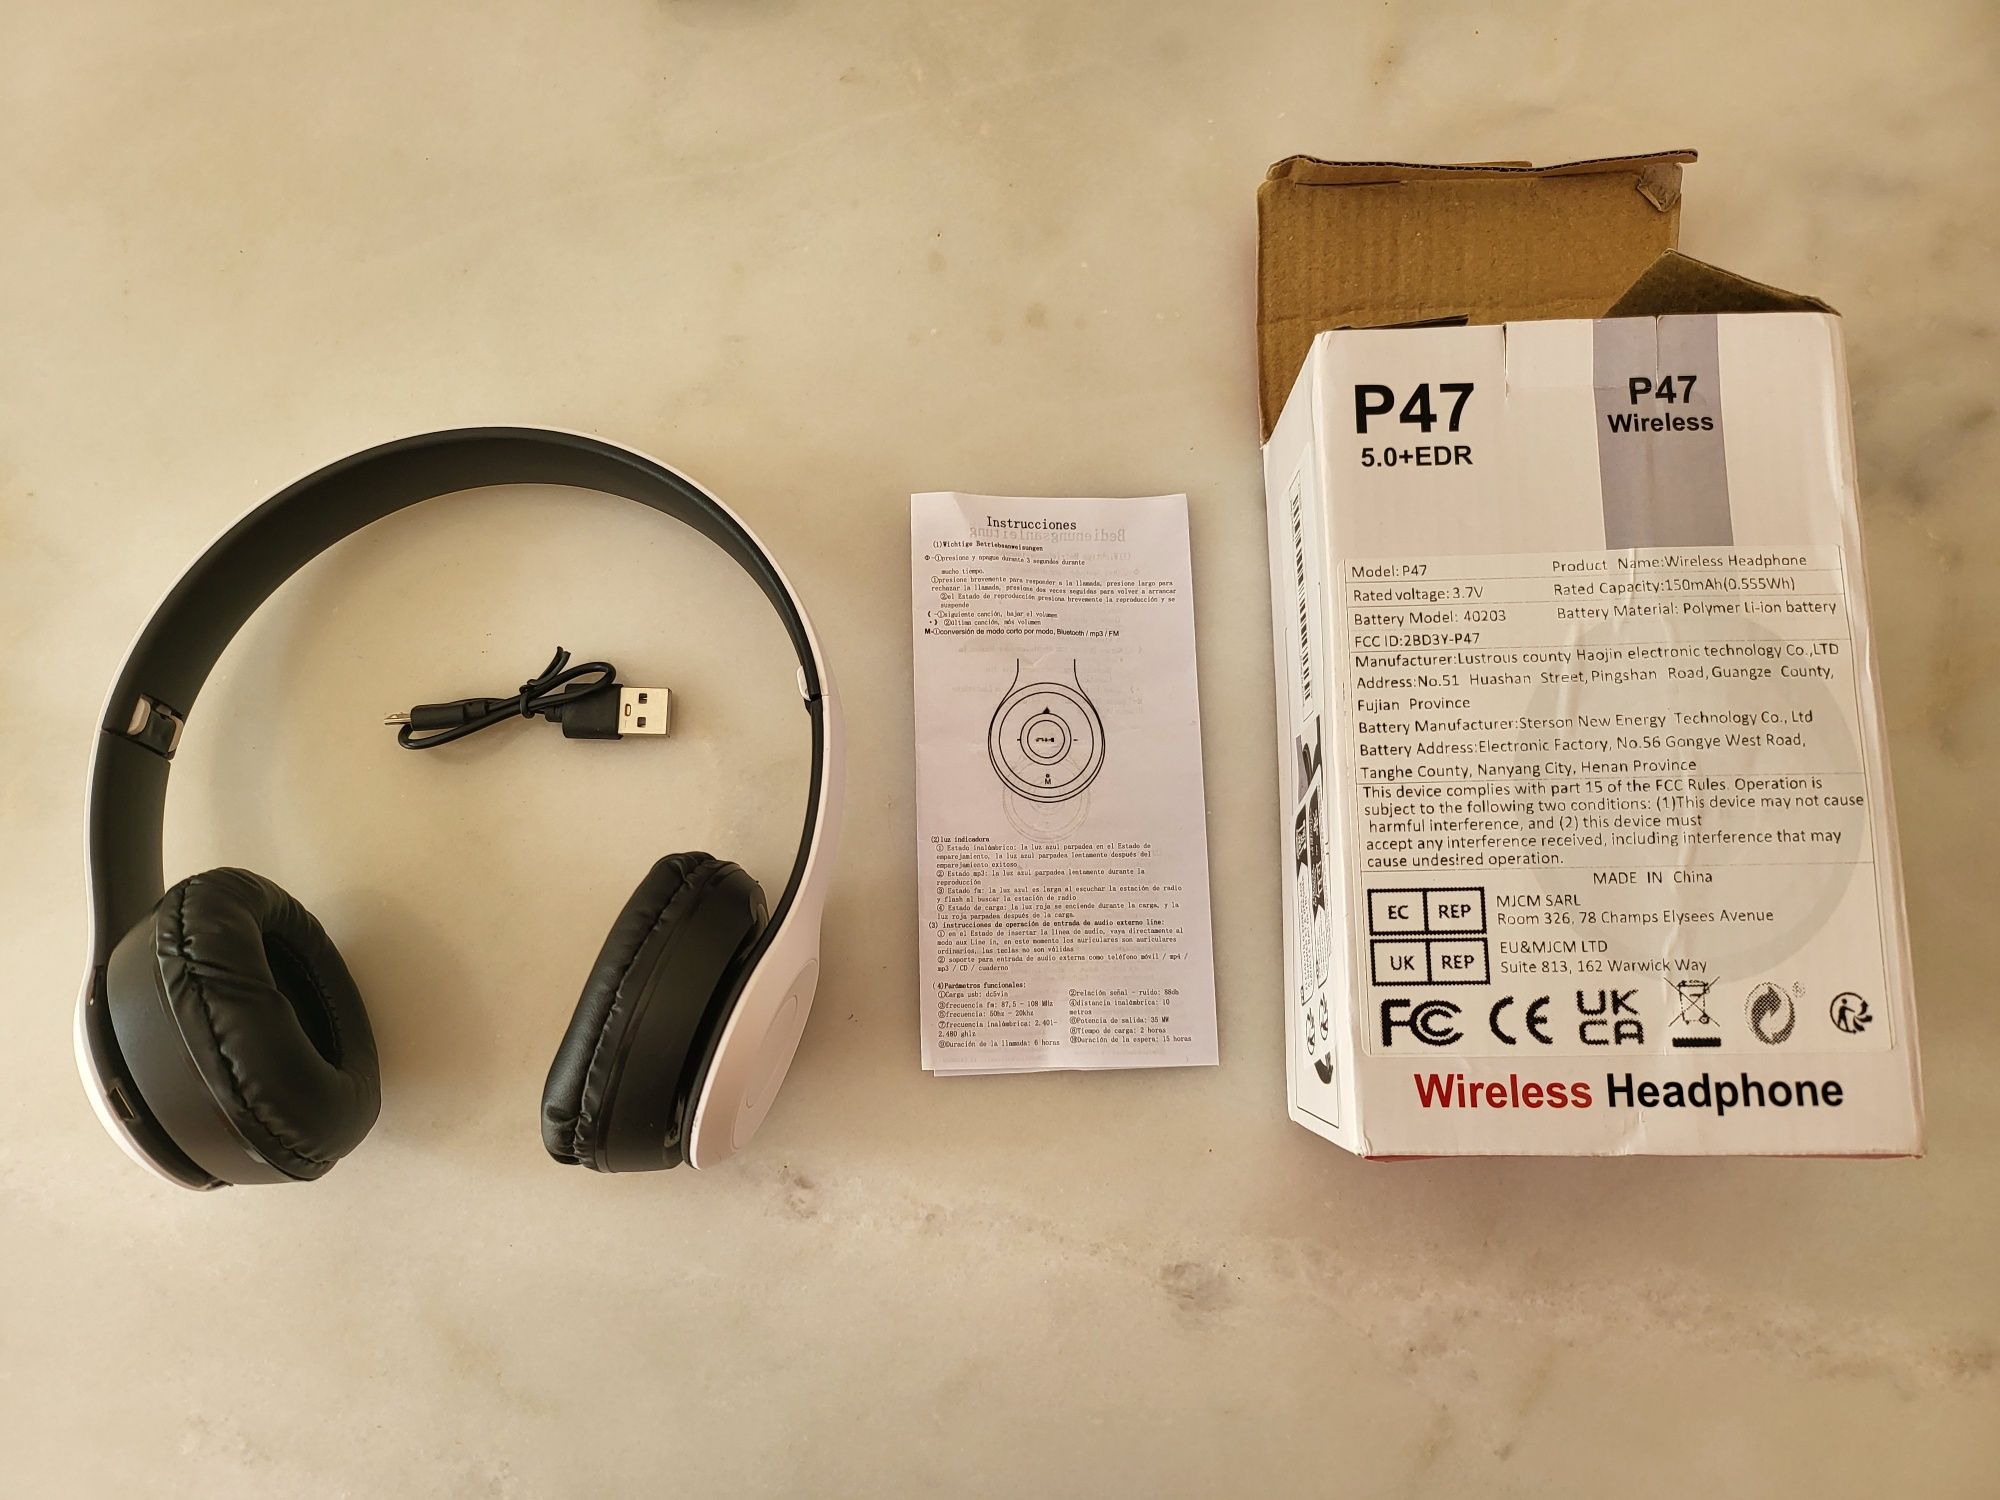 Auscultadores Wireless P47 5.0 + EDR